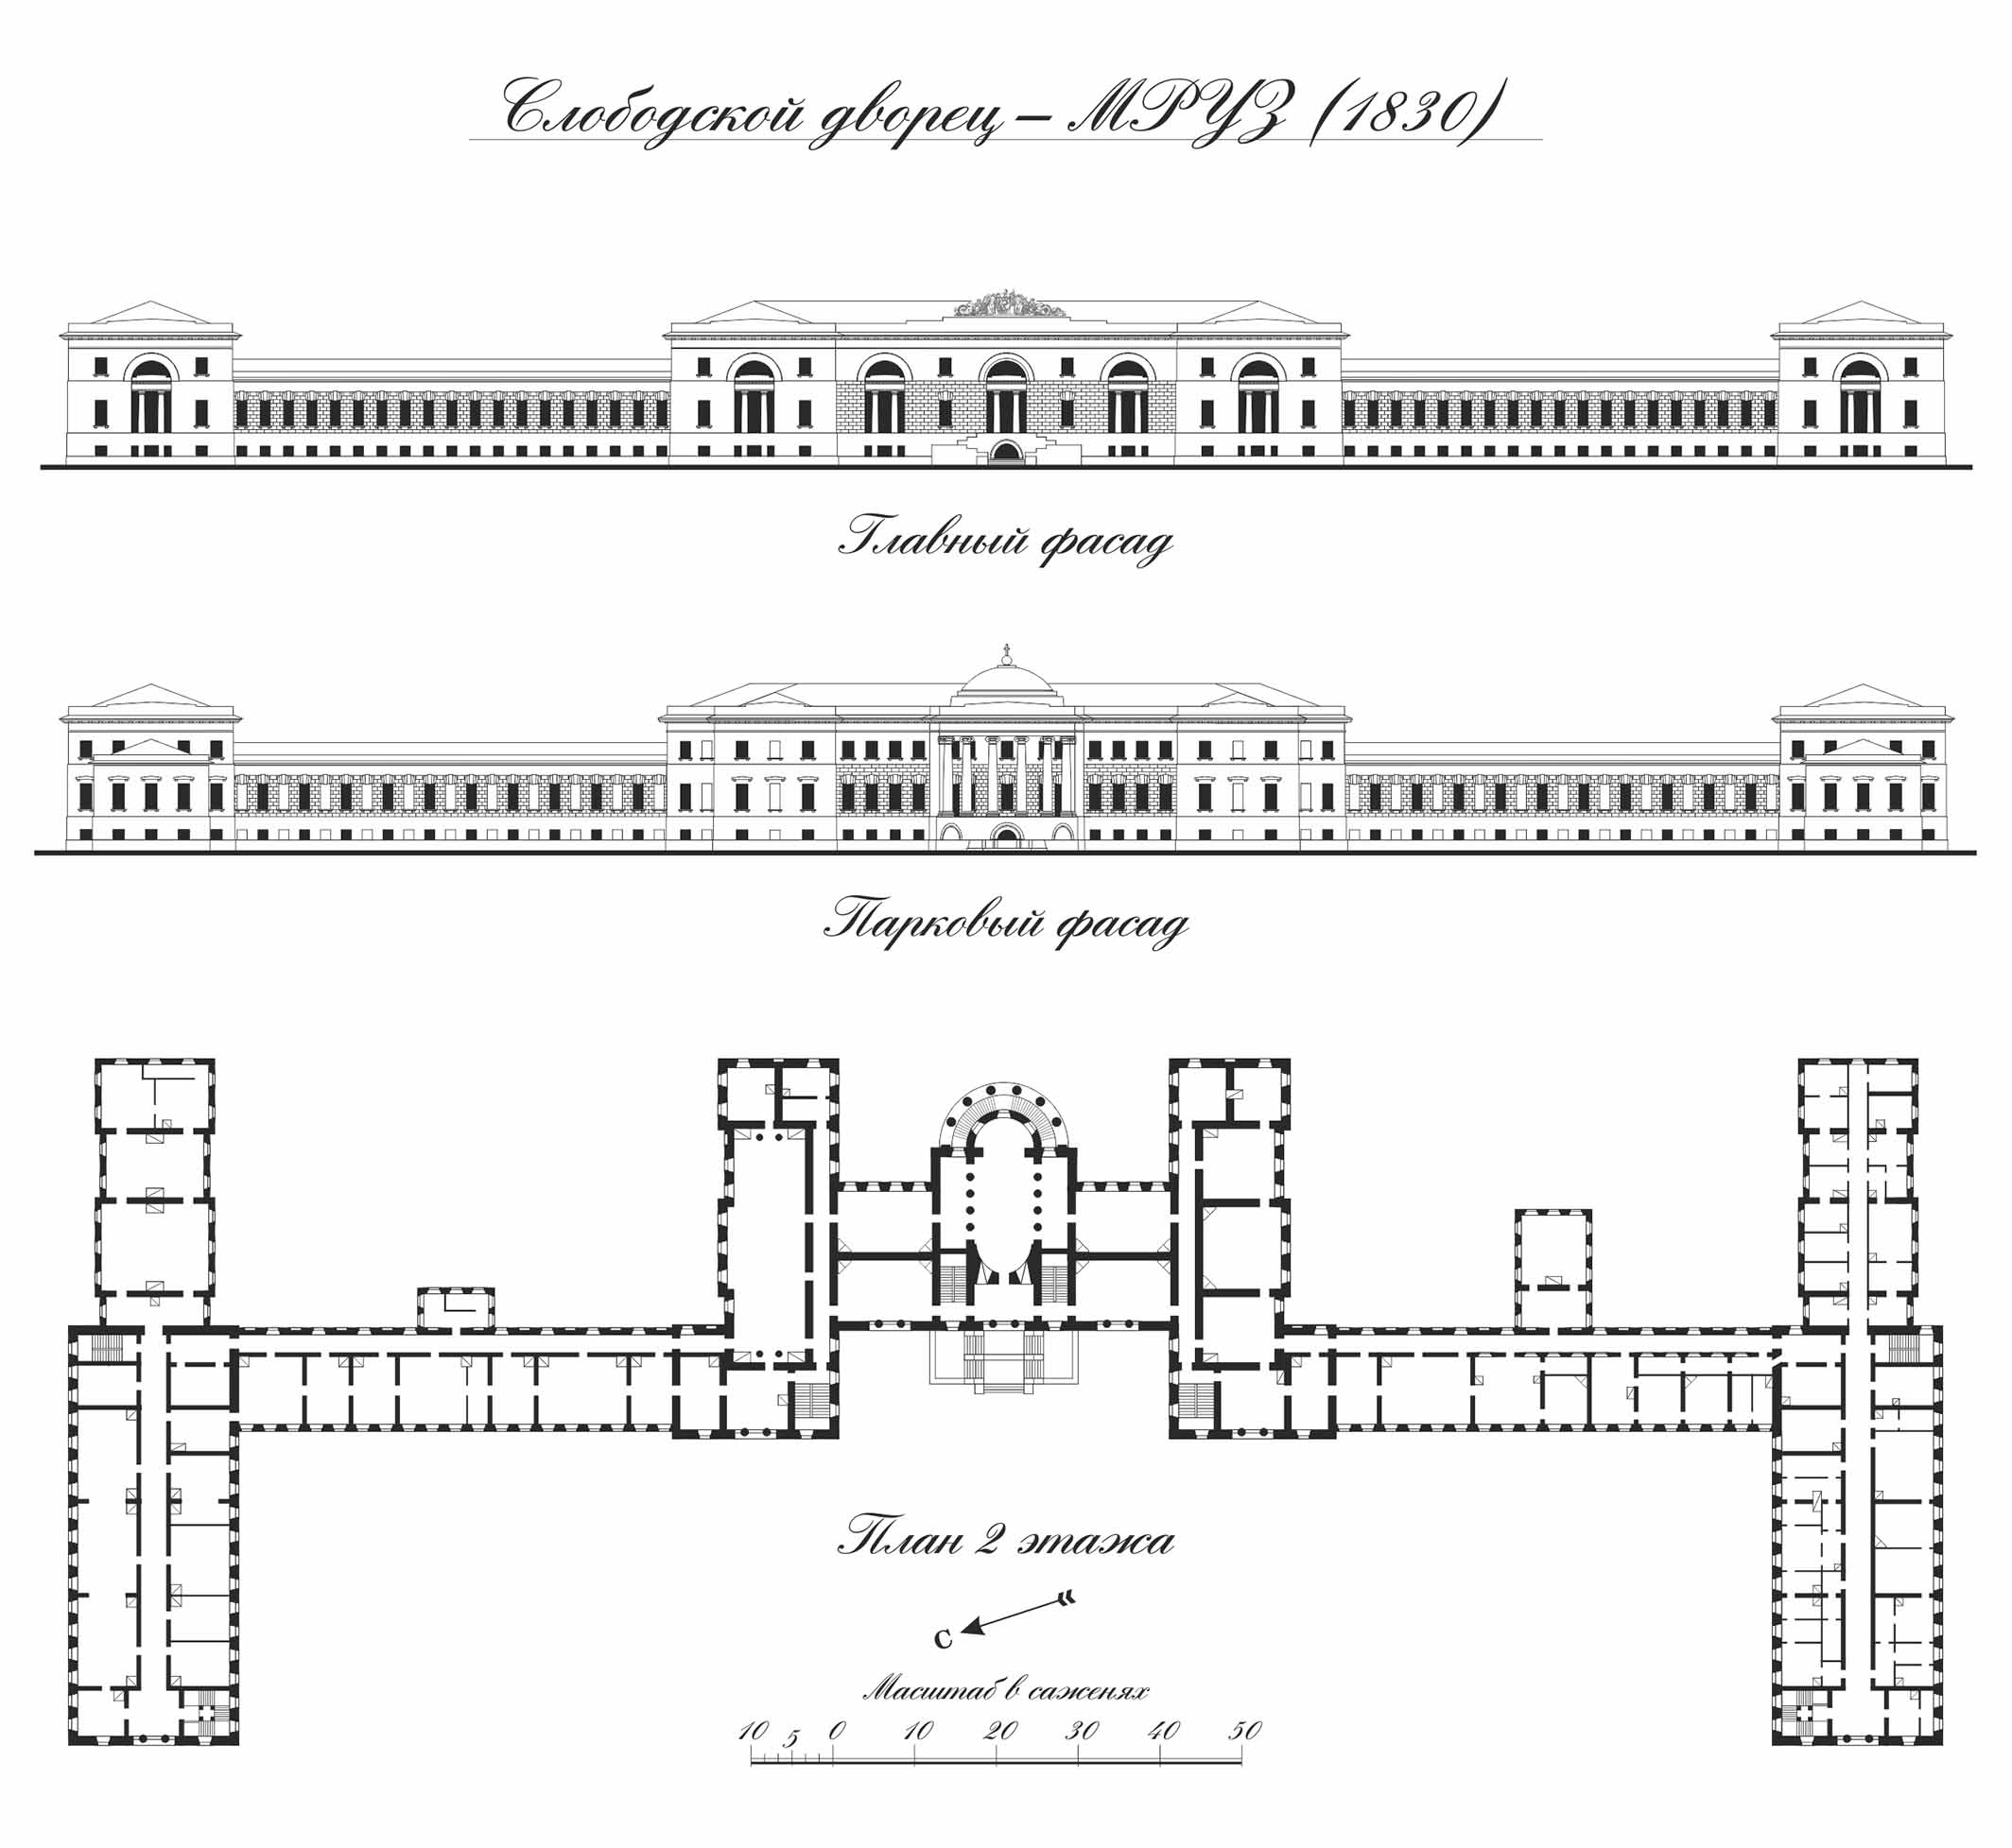 Слободской дворец. Главный фасад и план 2 этажа. 1830